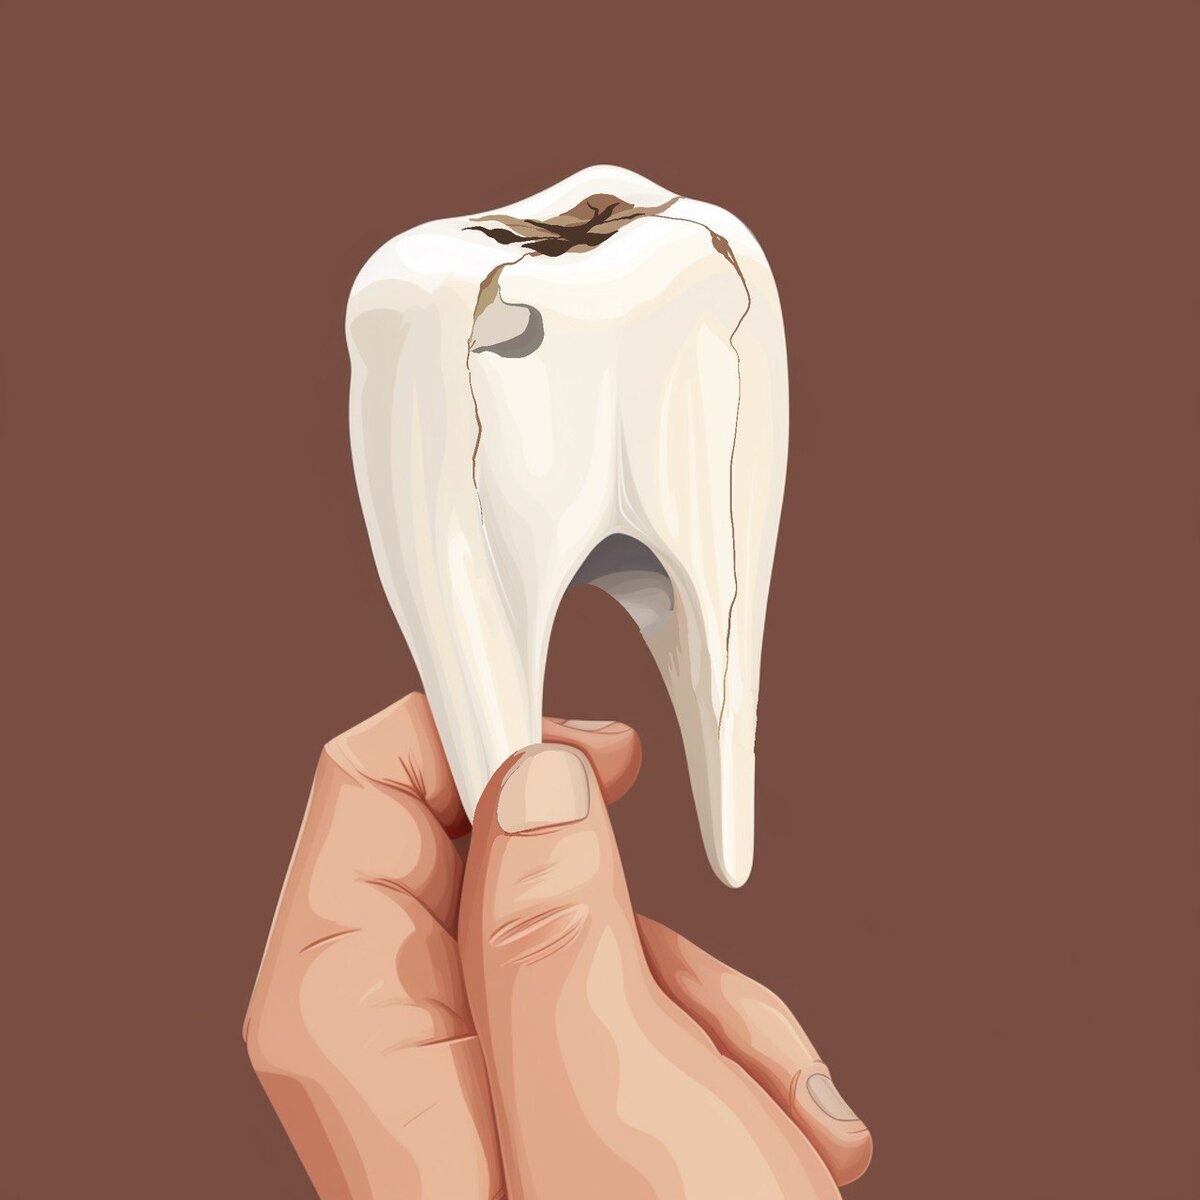 Почему болит зуб без нерва